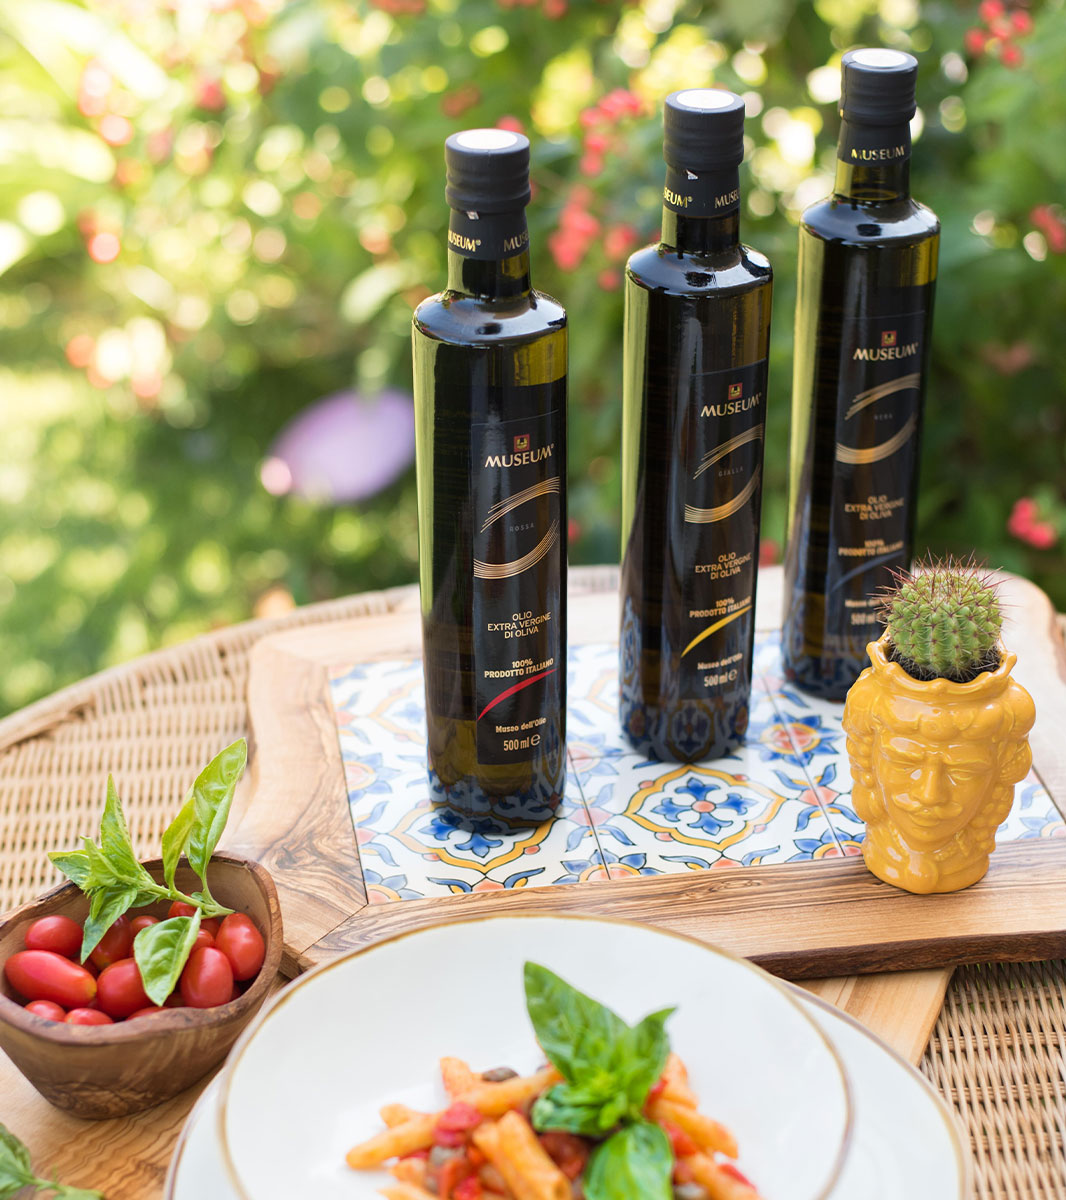 Olio extra vergine di oliva 100% italiano